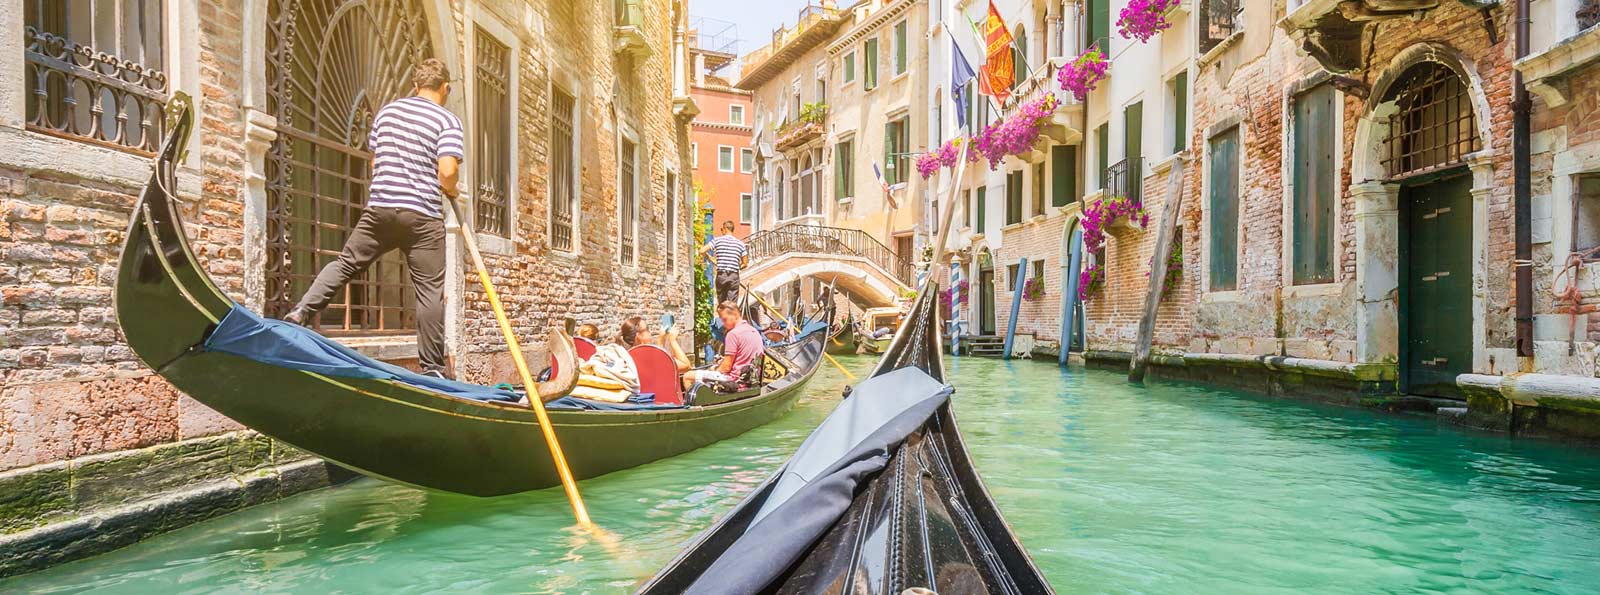 Viaje en góndola en Venecia con serenata